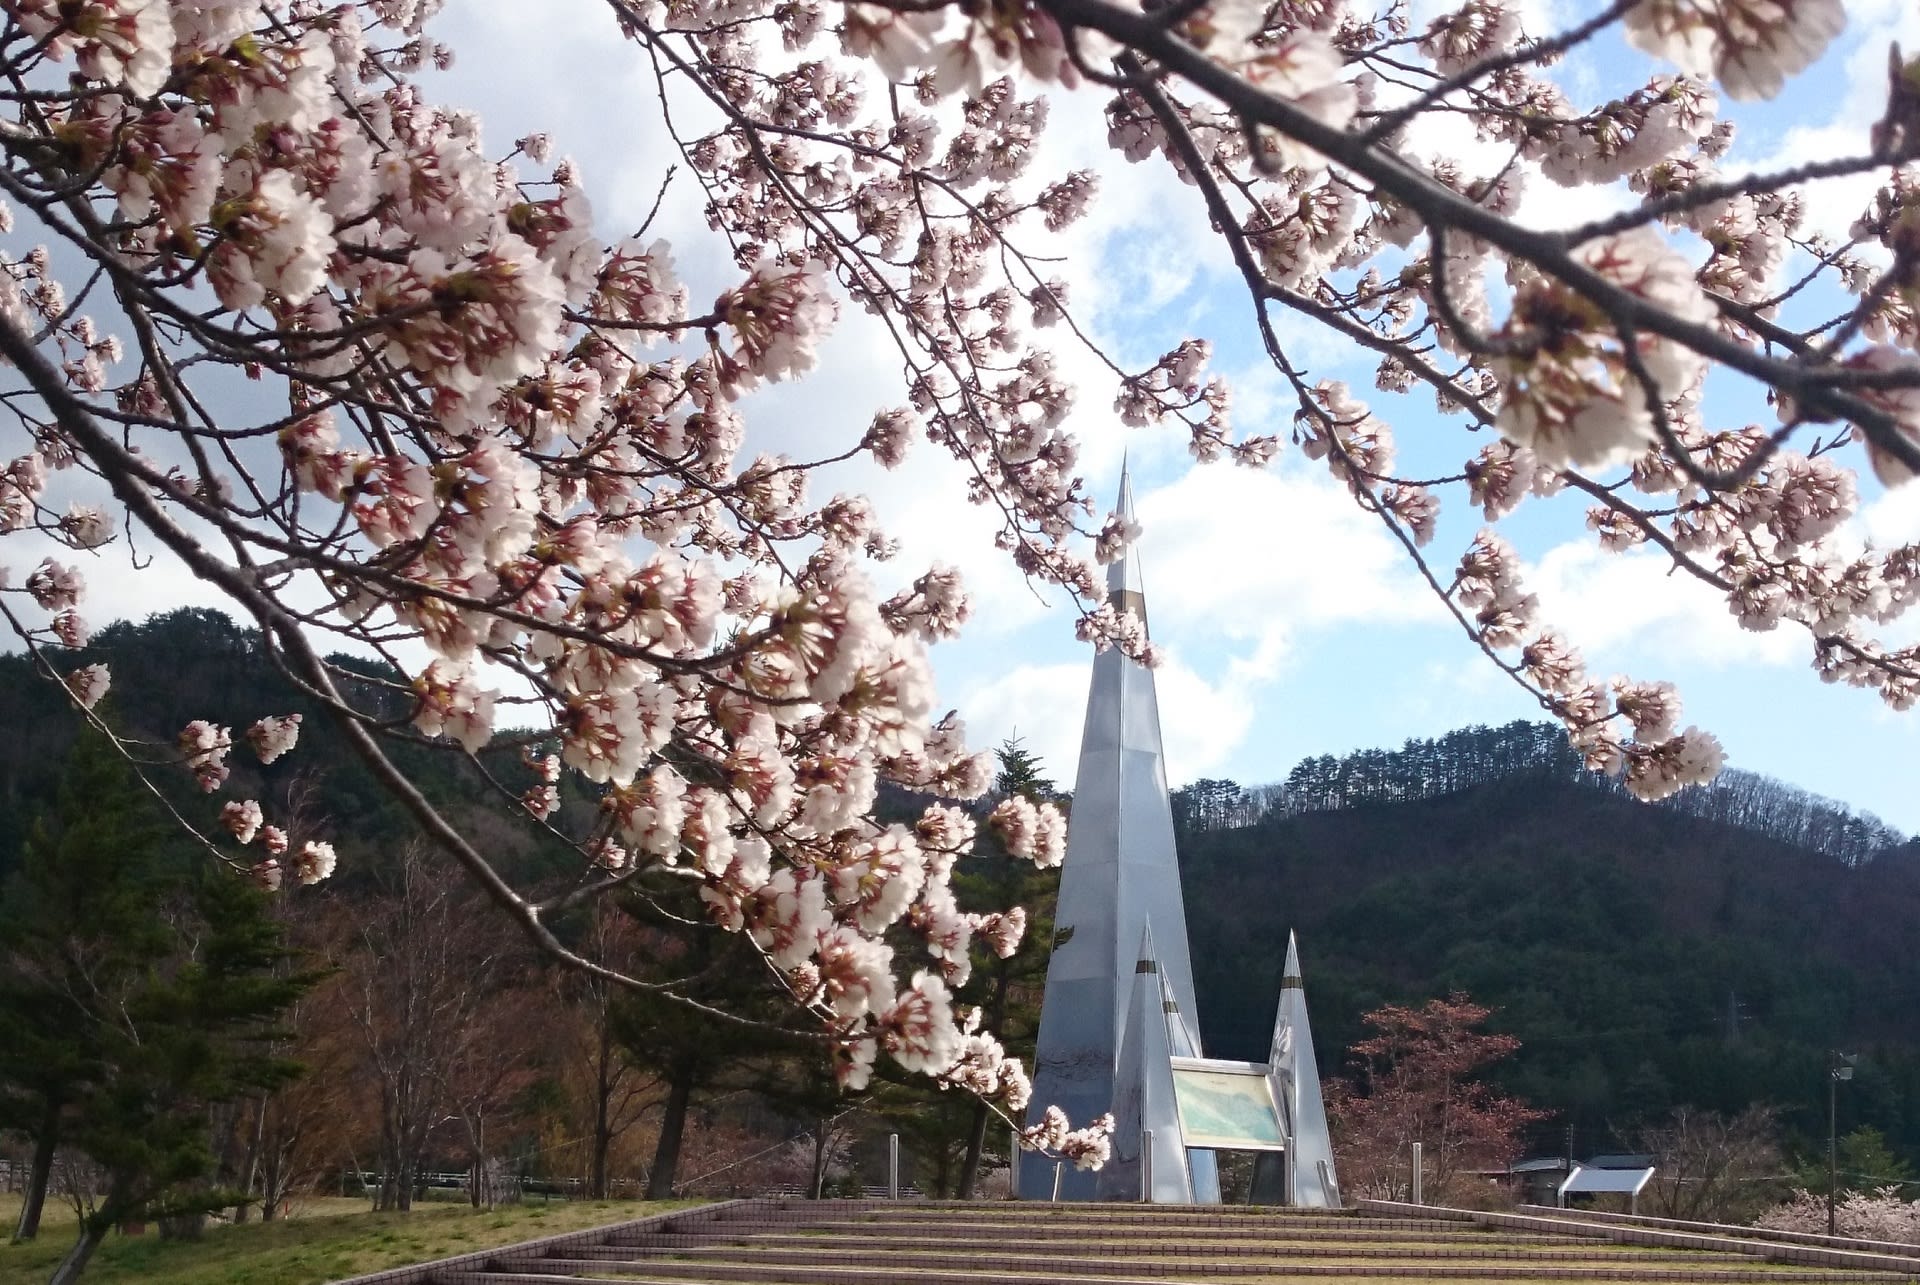 七ヶ宿ダム公園の桜の開花状況 ゆり太郎だより